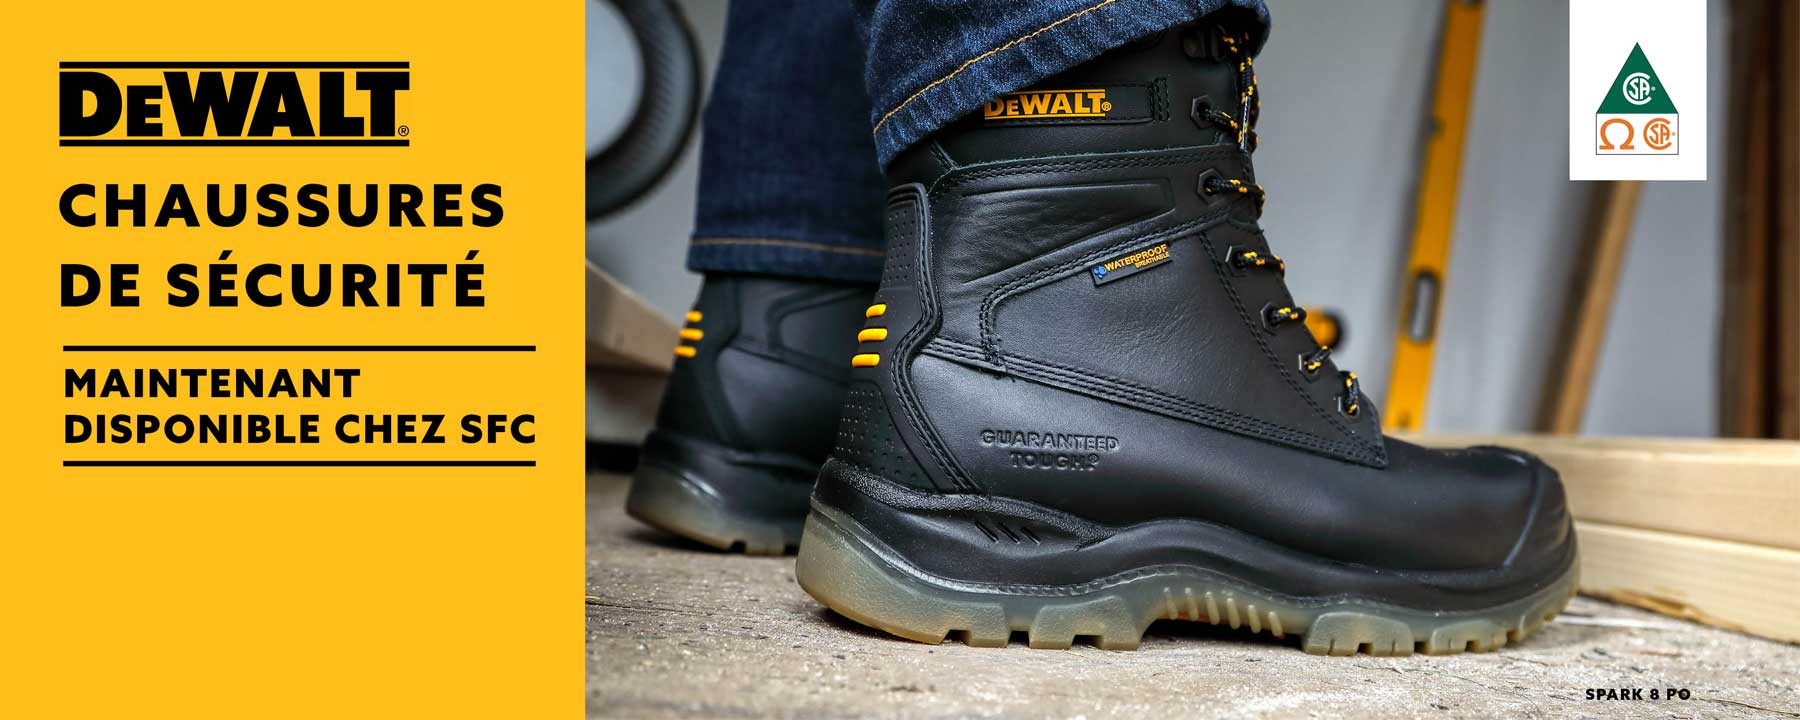 Image of DEWALT Safety boot